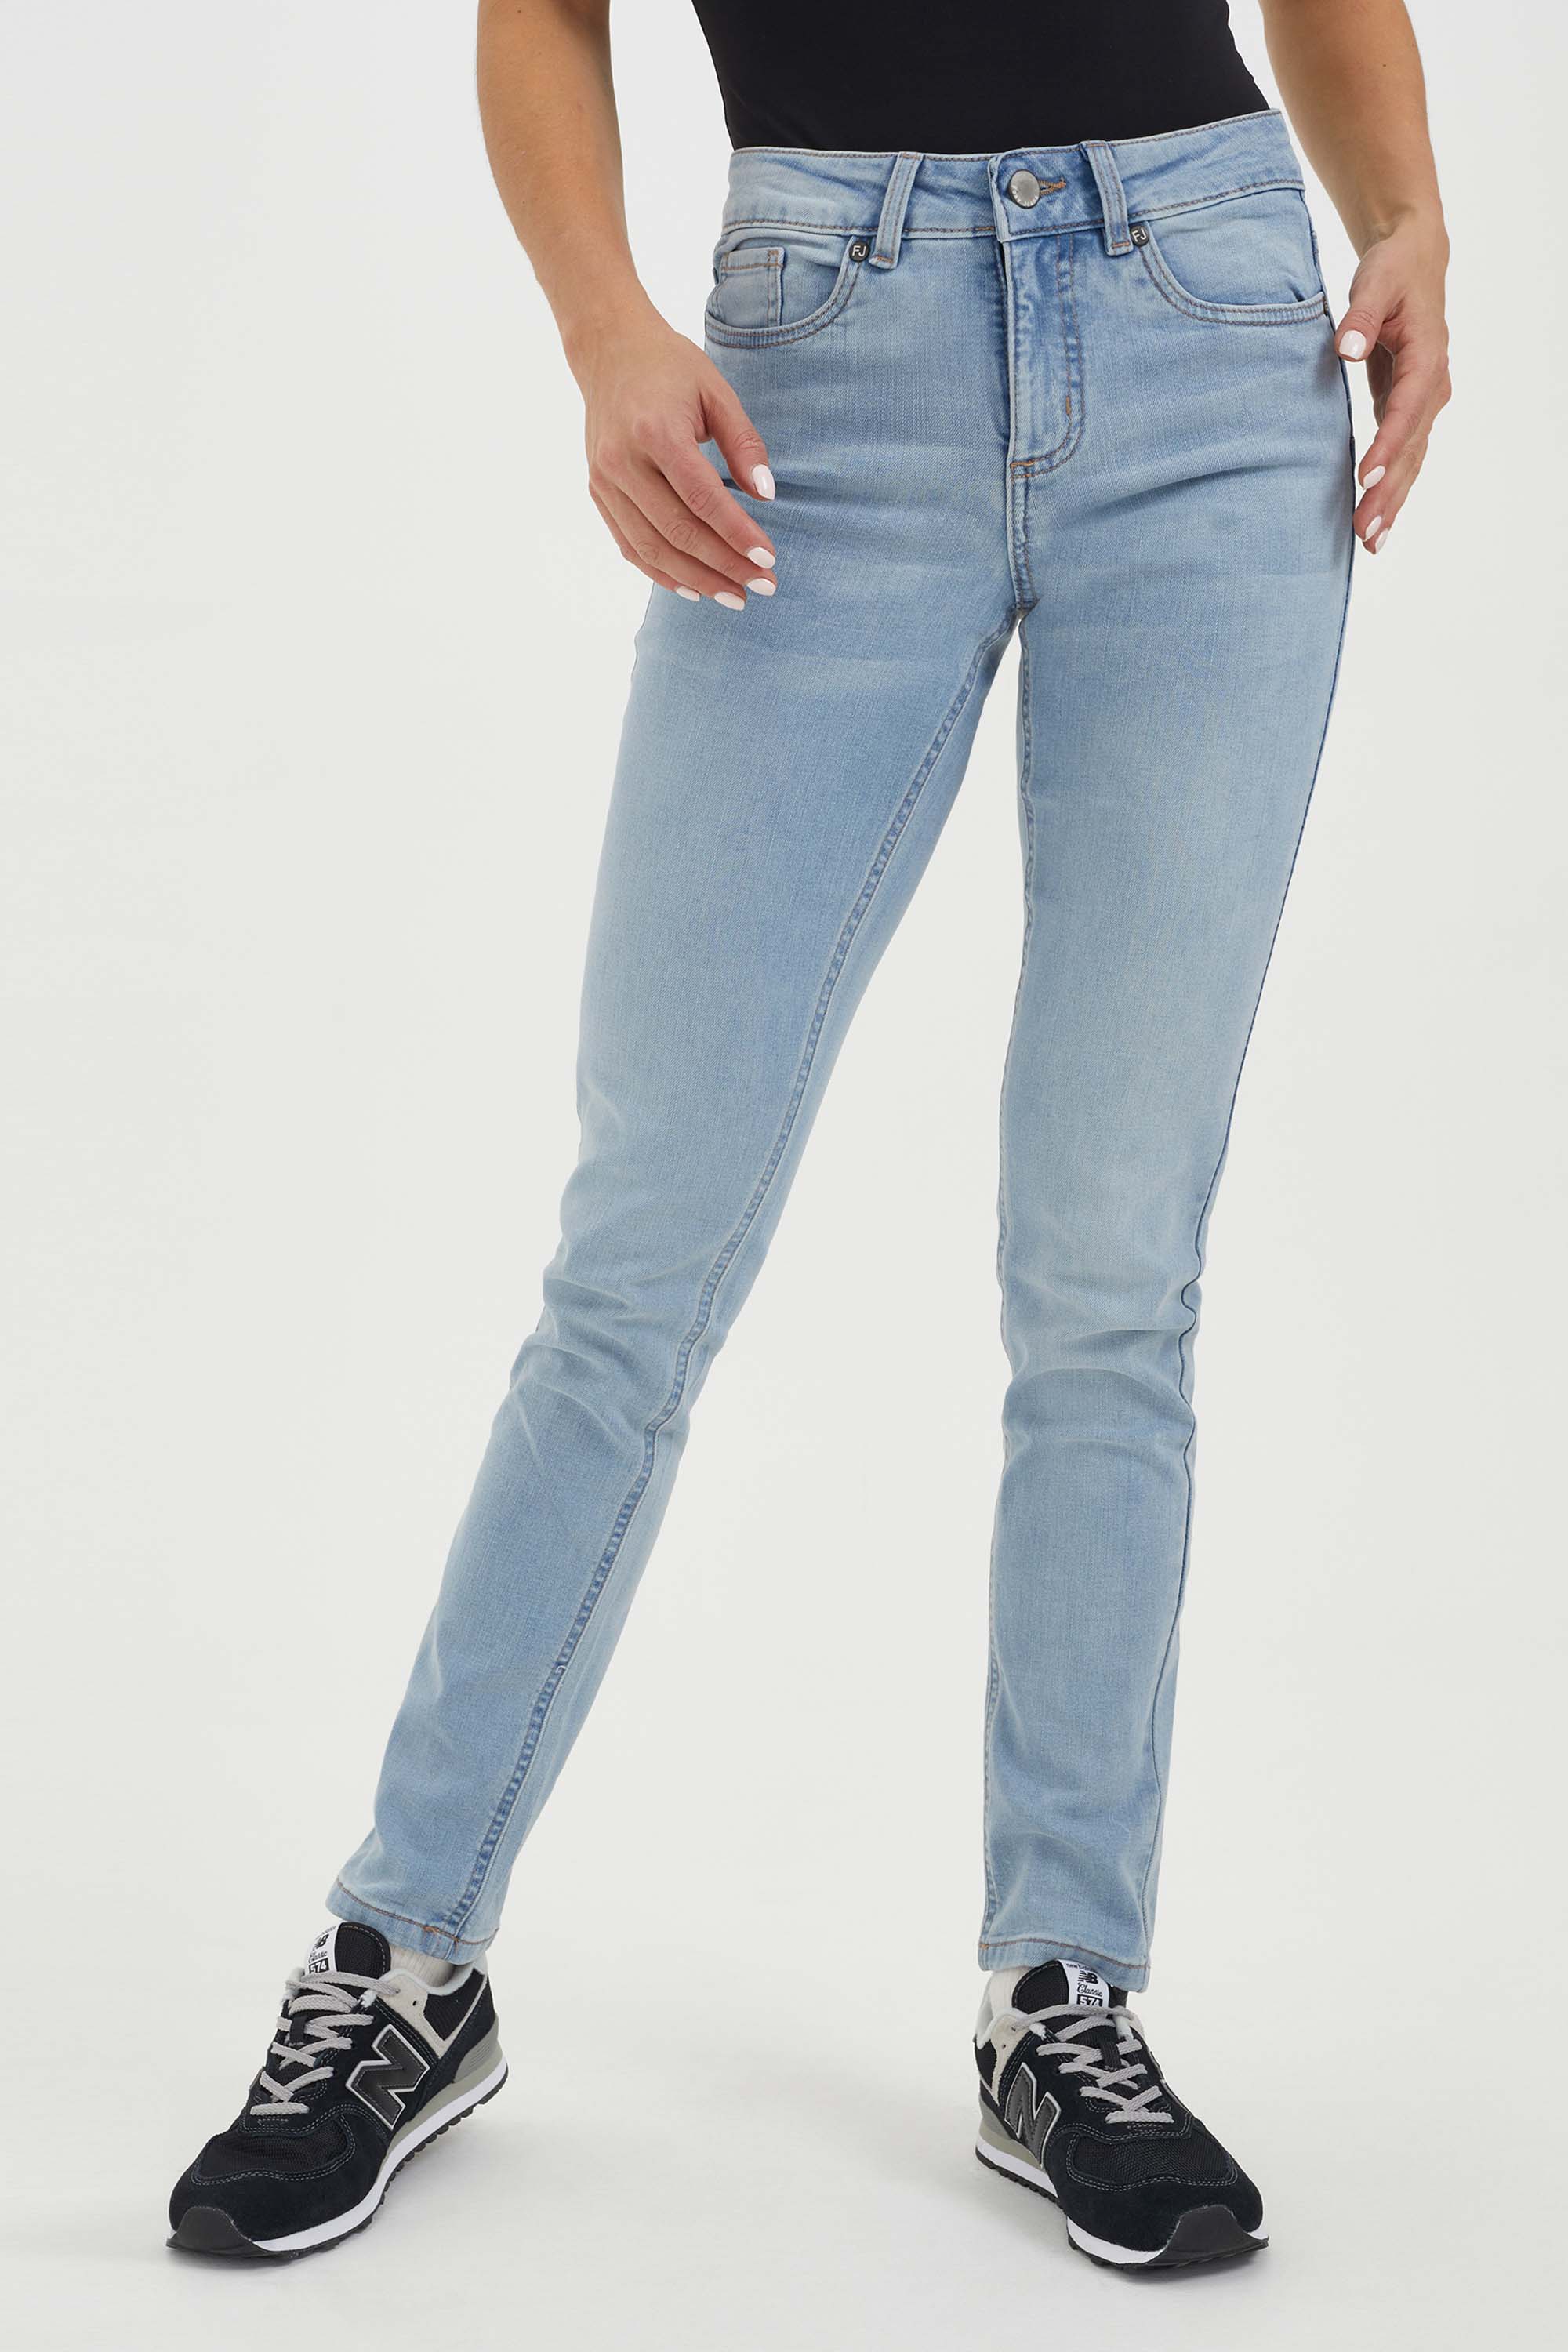 Narrow-legged Joy Jeans